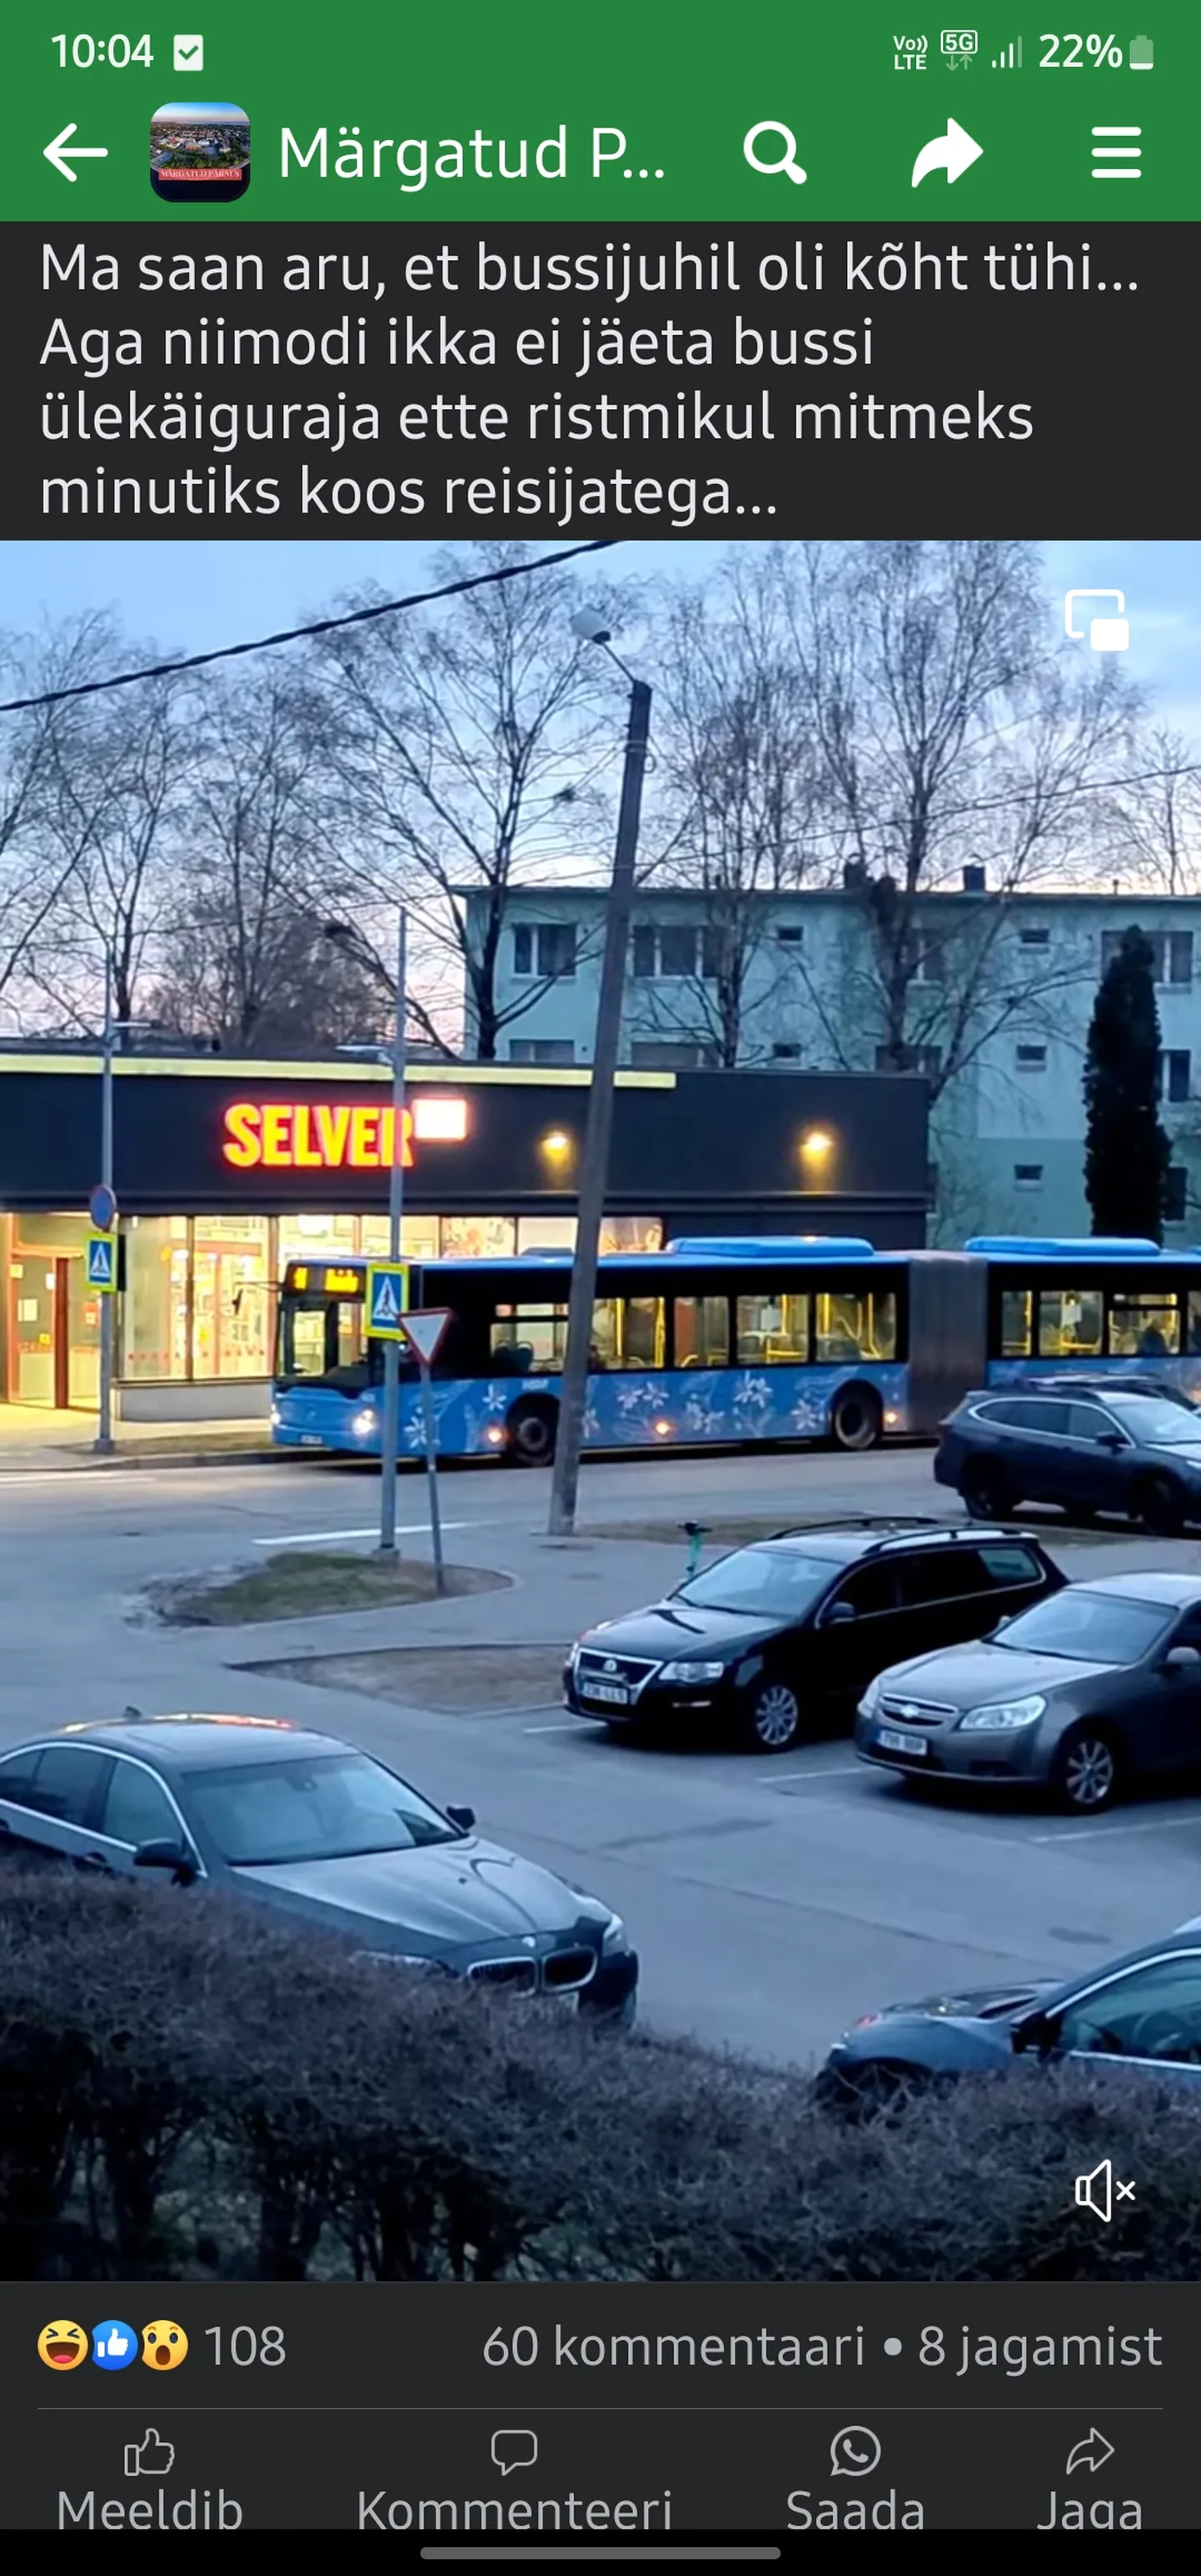 Водитель пярнуского автобуса выскочил в магазин посреди маршрута.